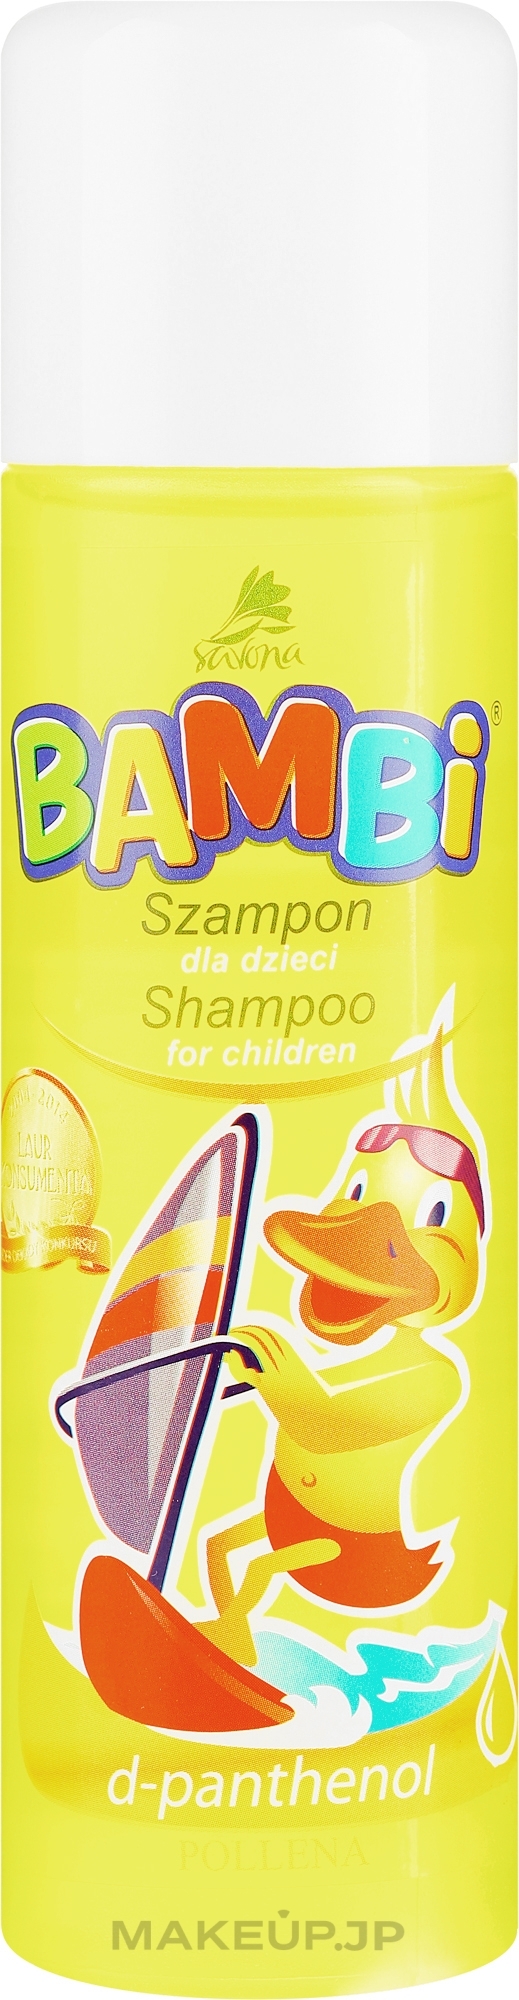 Baby Shampoo - Pollena Savona Bambi D-phantenol Shampoo — photo 150 ml